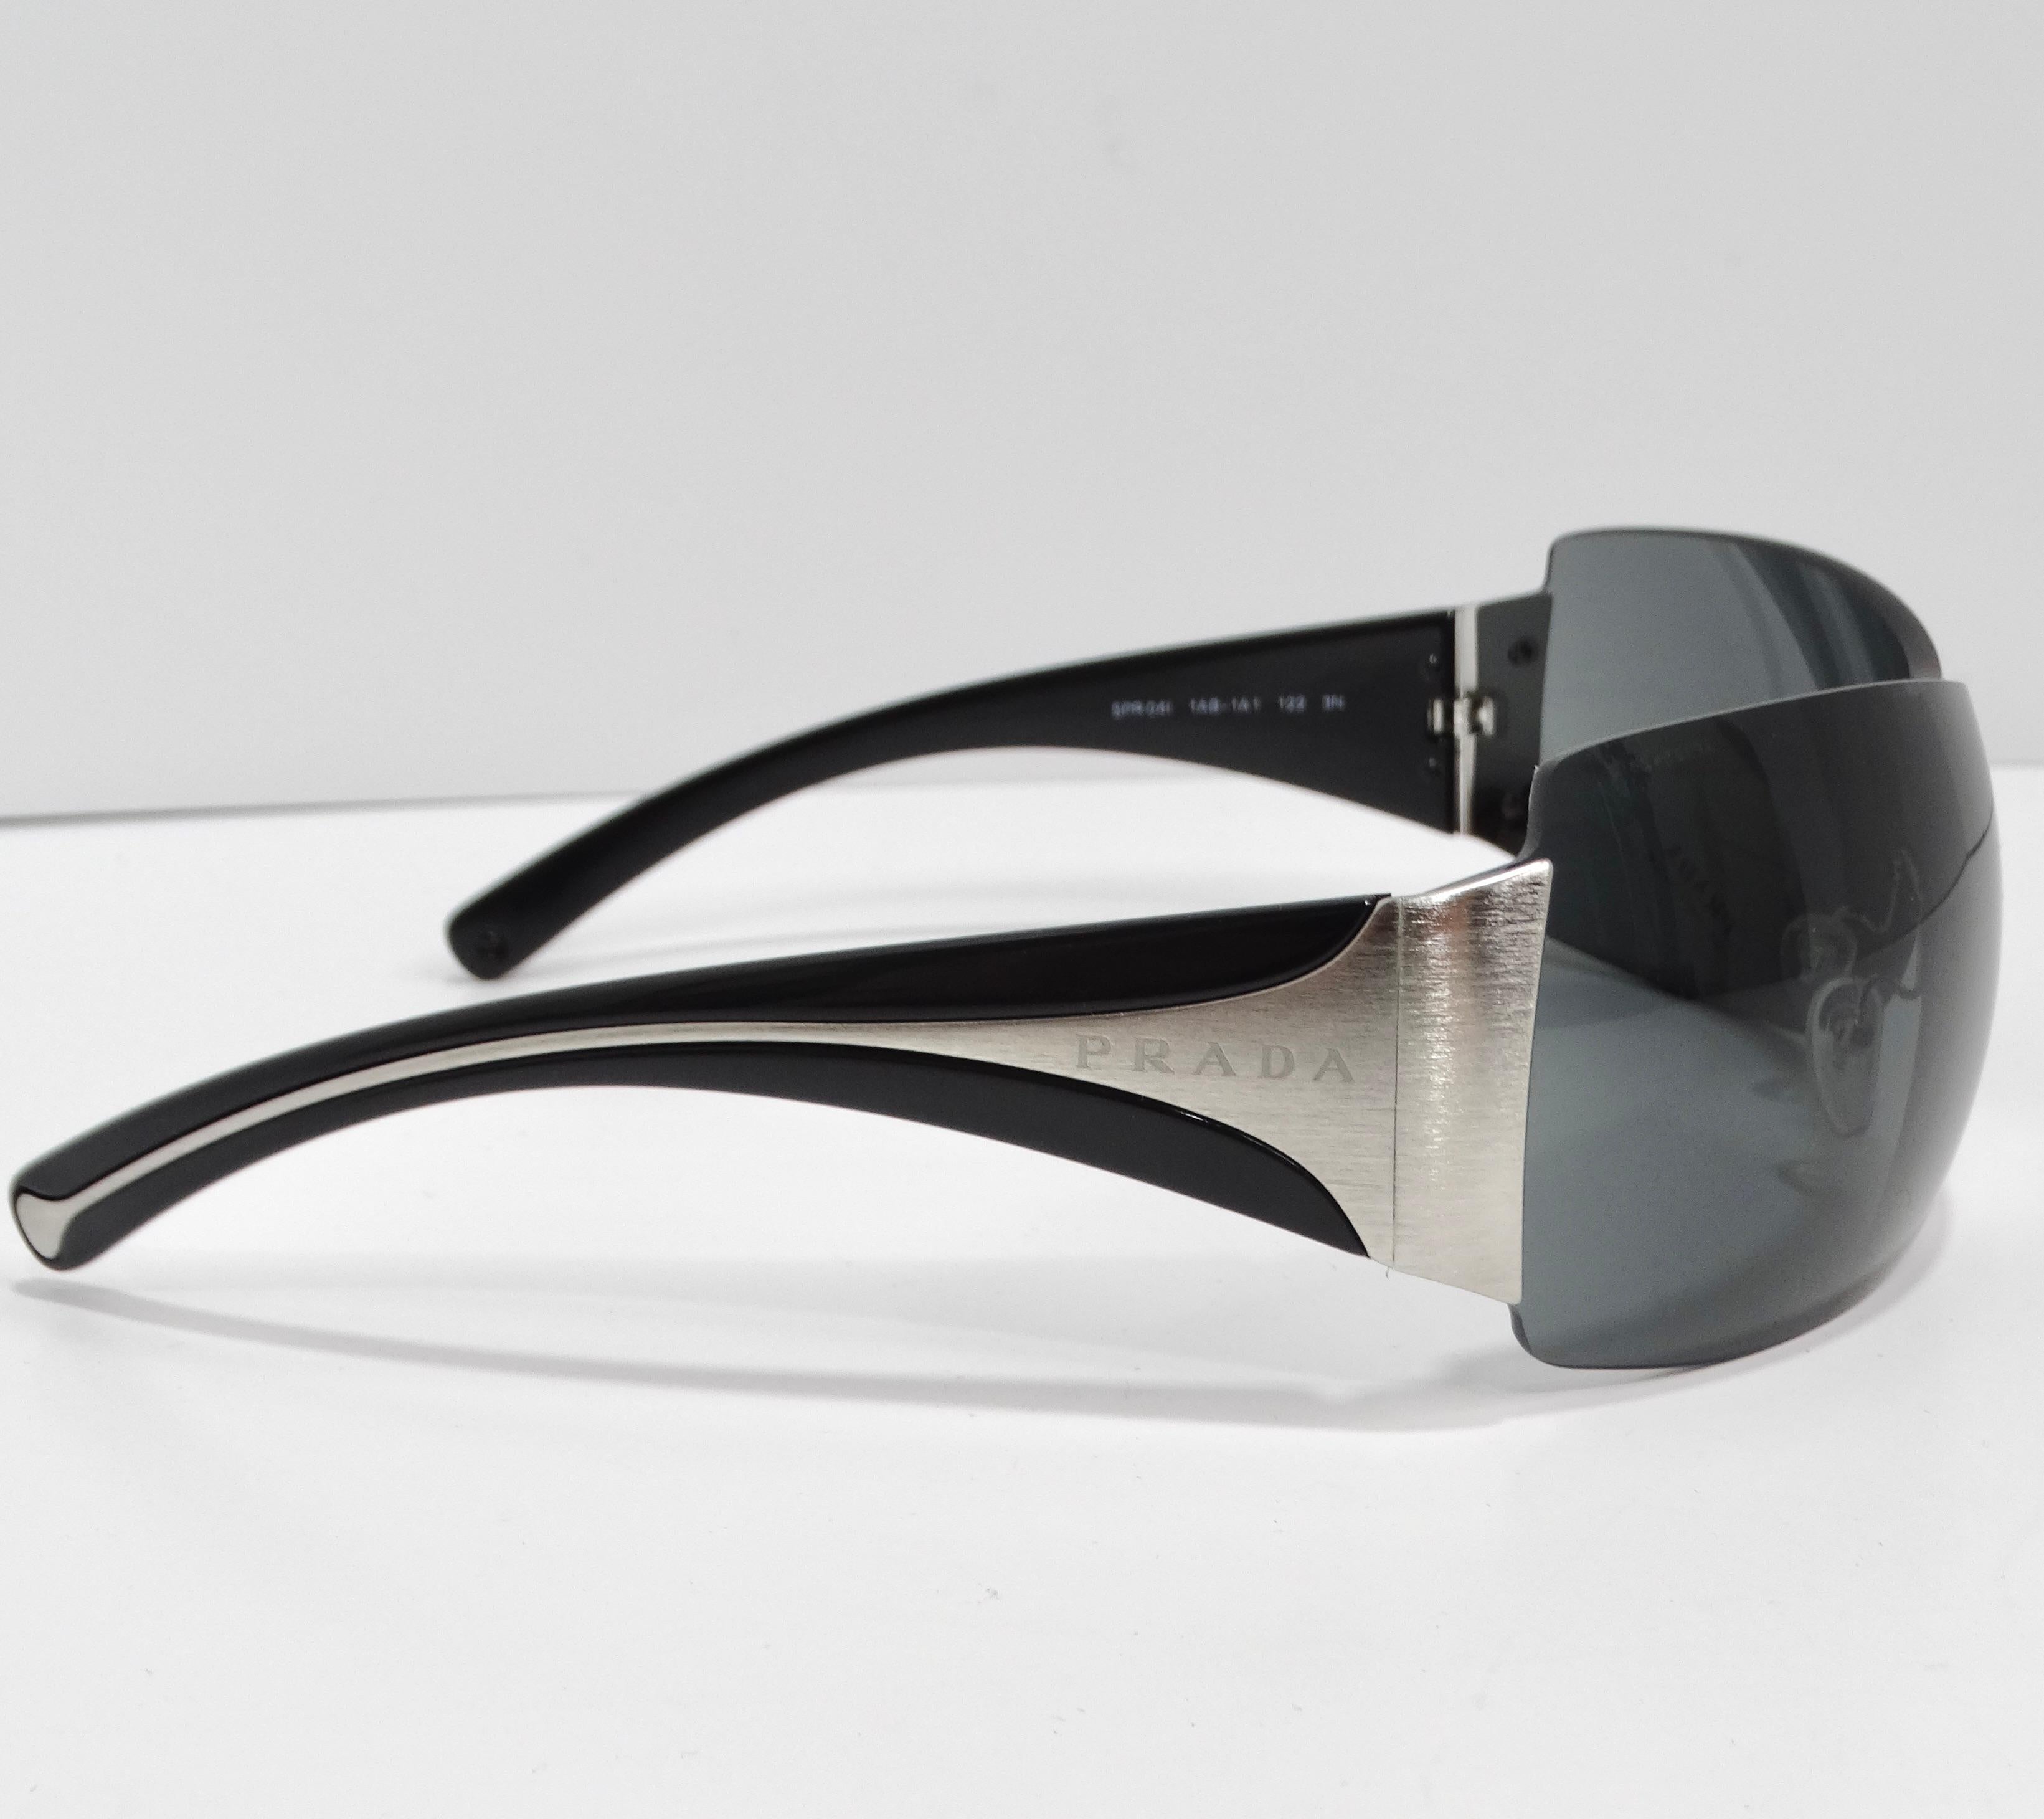 Prada 1990s Silver Tone Shield Sunglasses In New Condition For Sale In Scottsdale, AZ